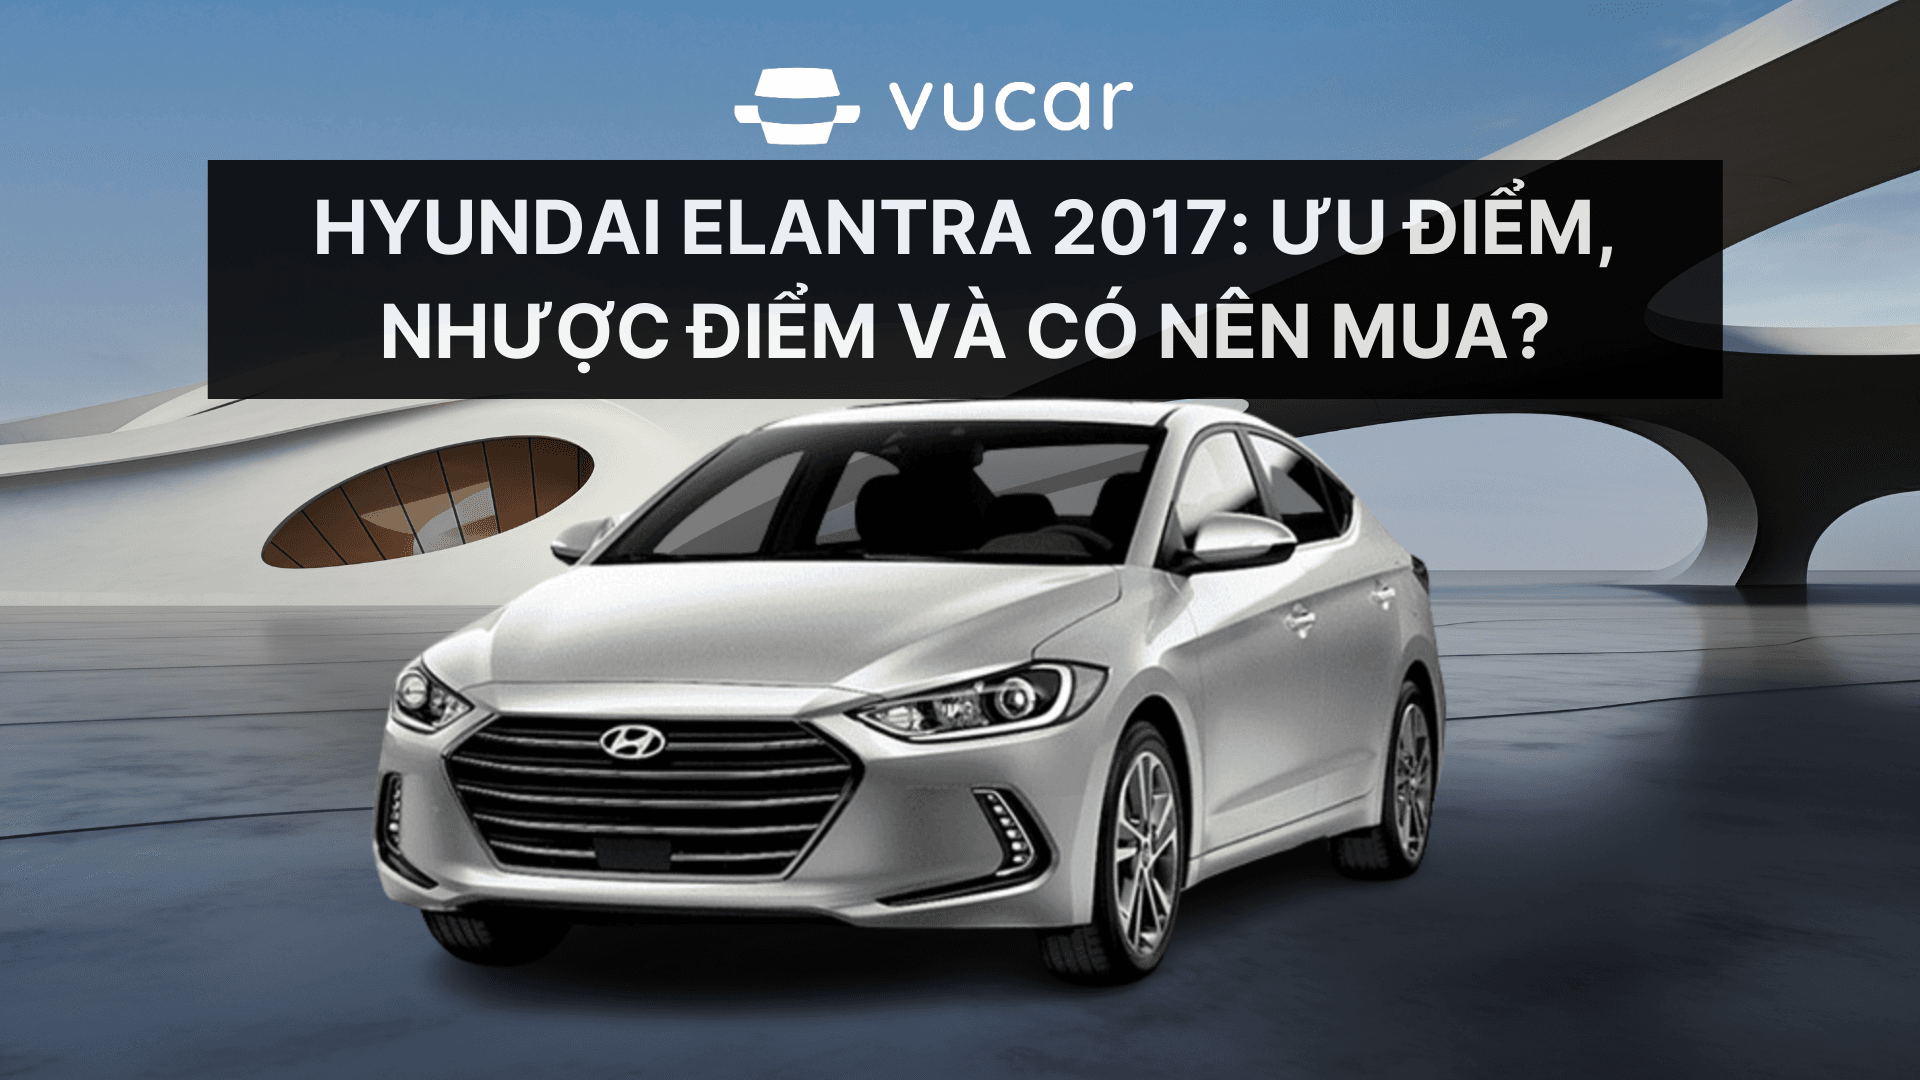 Hyundai Elantra 2017: Ưu điểm, nhược điểm và có nên mua?